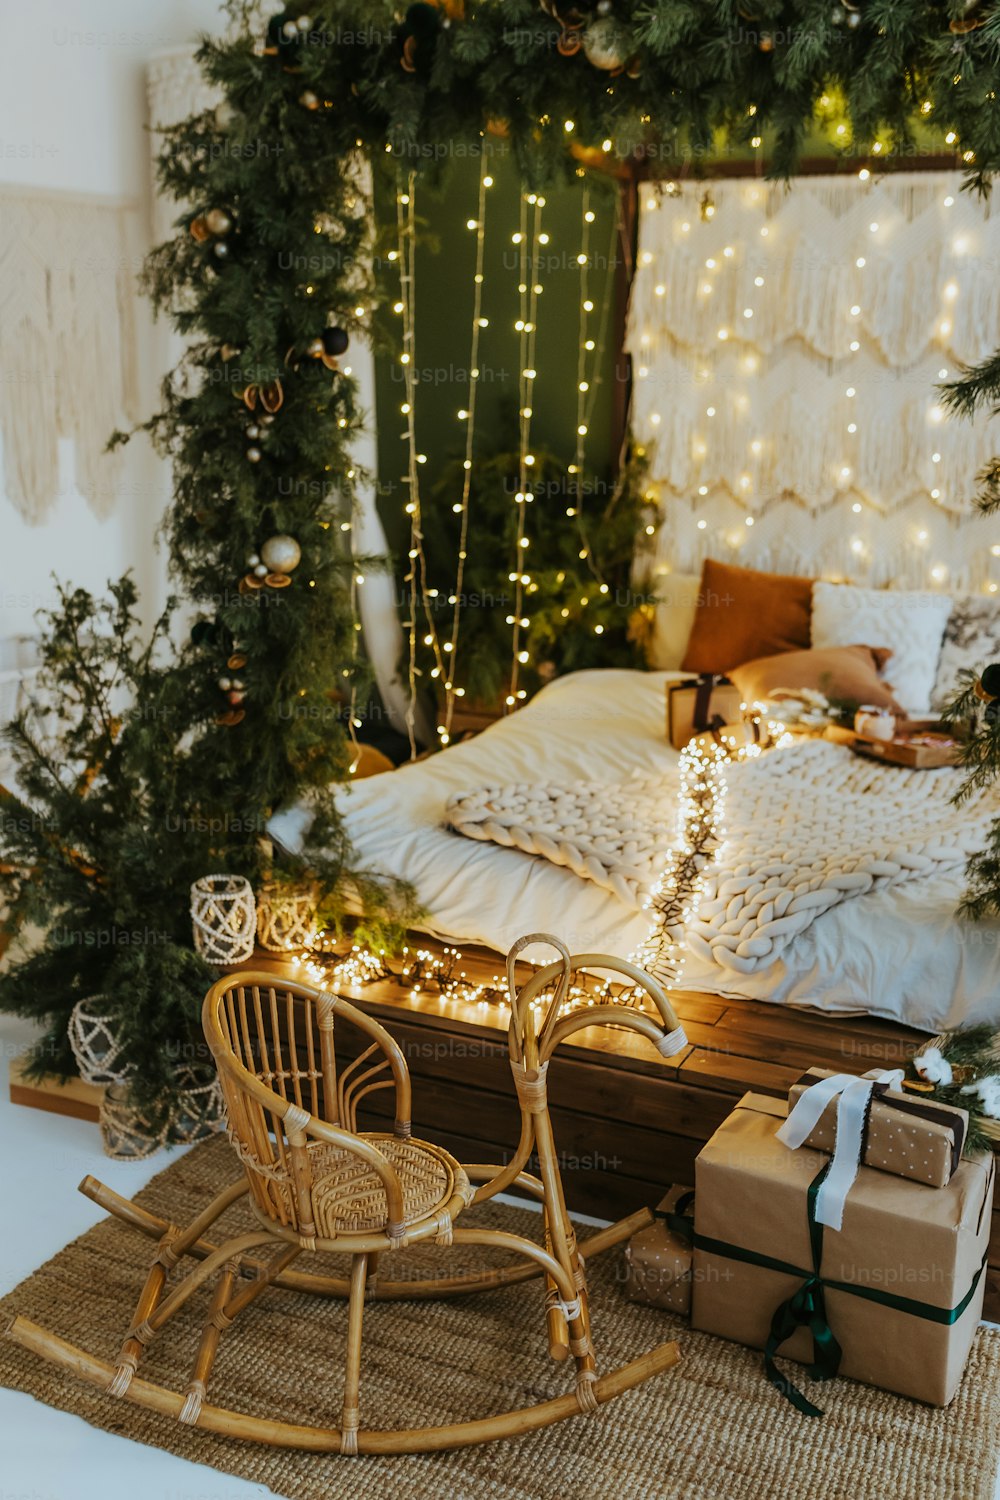 Une chambre décorée pour Noël avec un lit traîneau